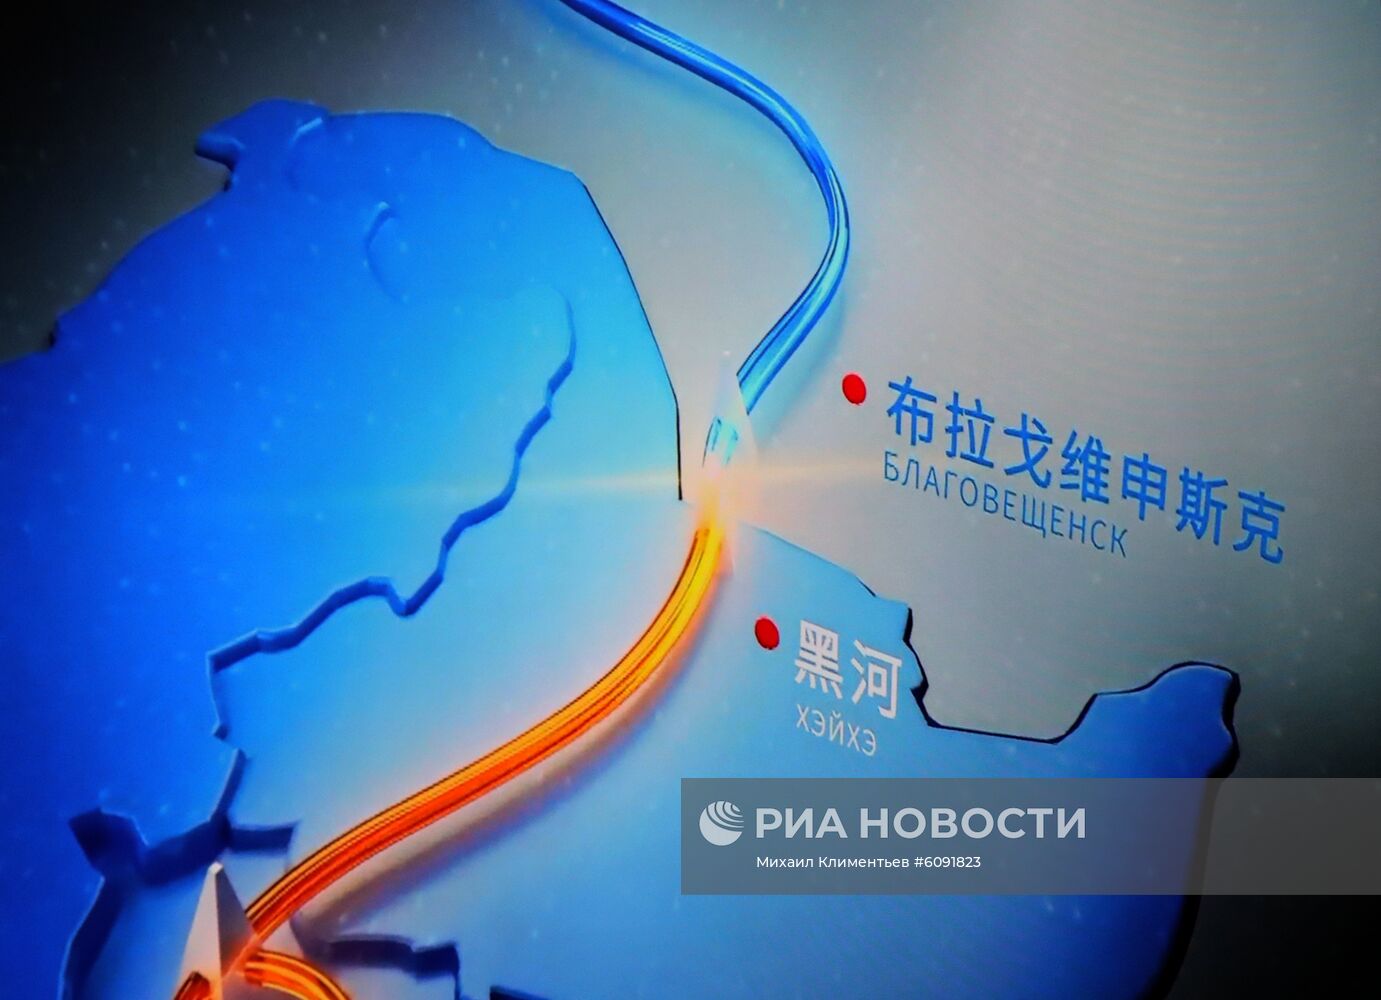 Президент РФ В. Путин принял участие в церемонии начала поставок российского газа в КНР по "восточному" маршруту